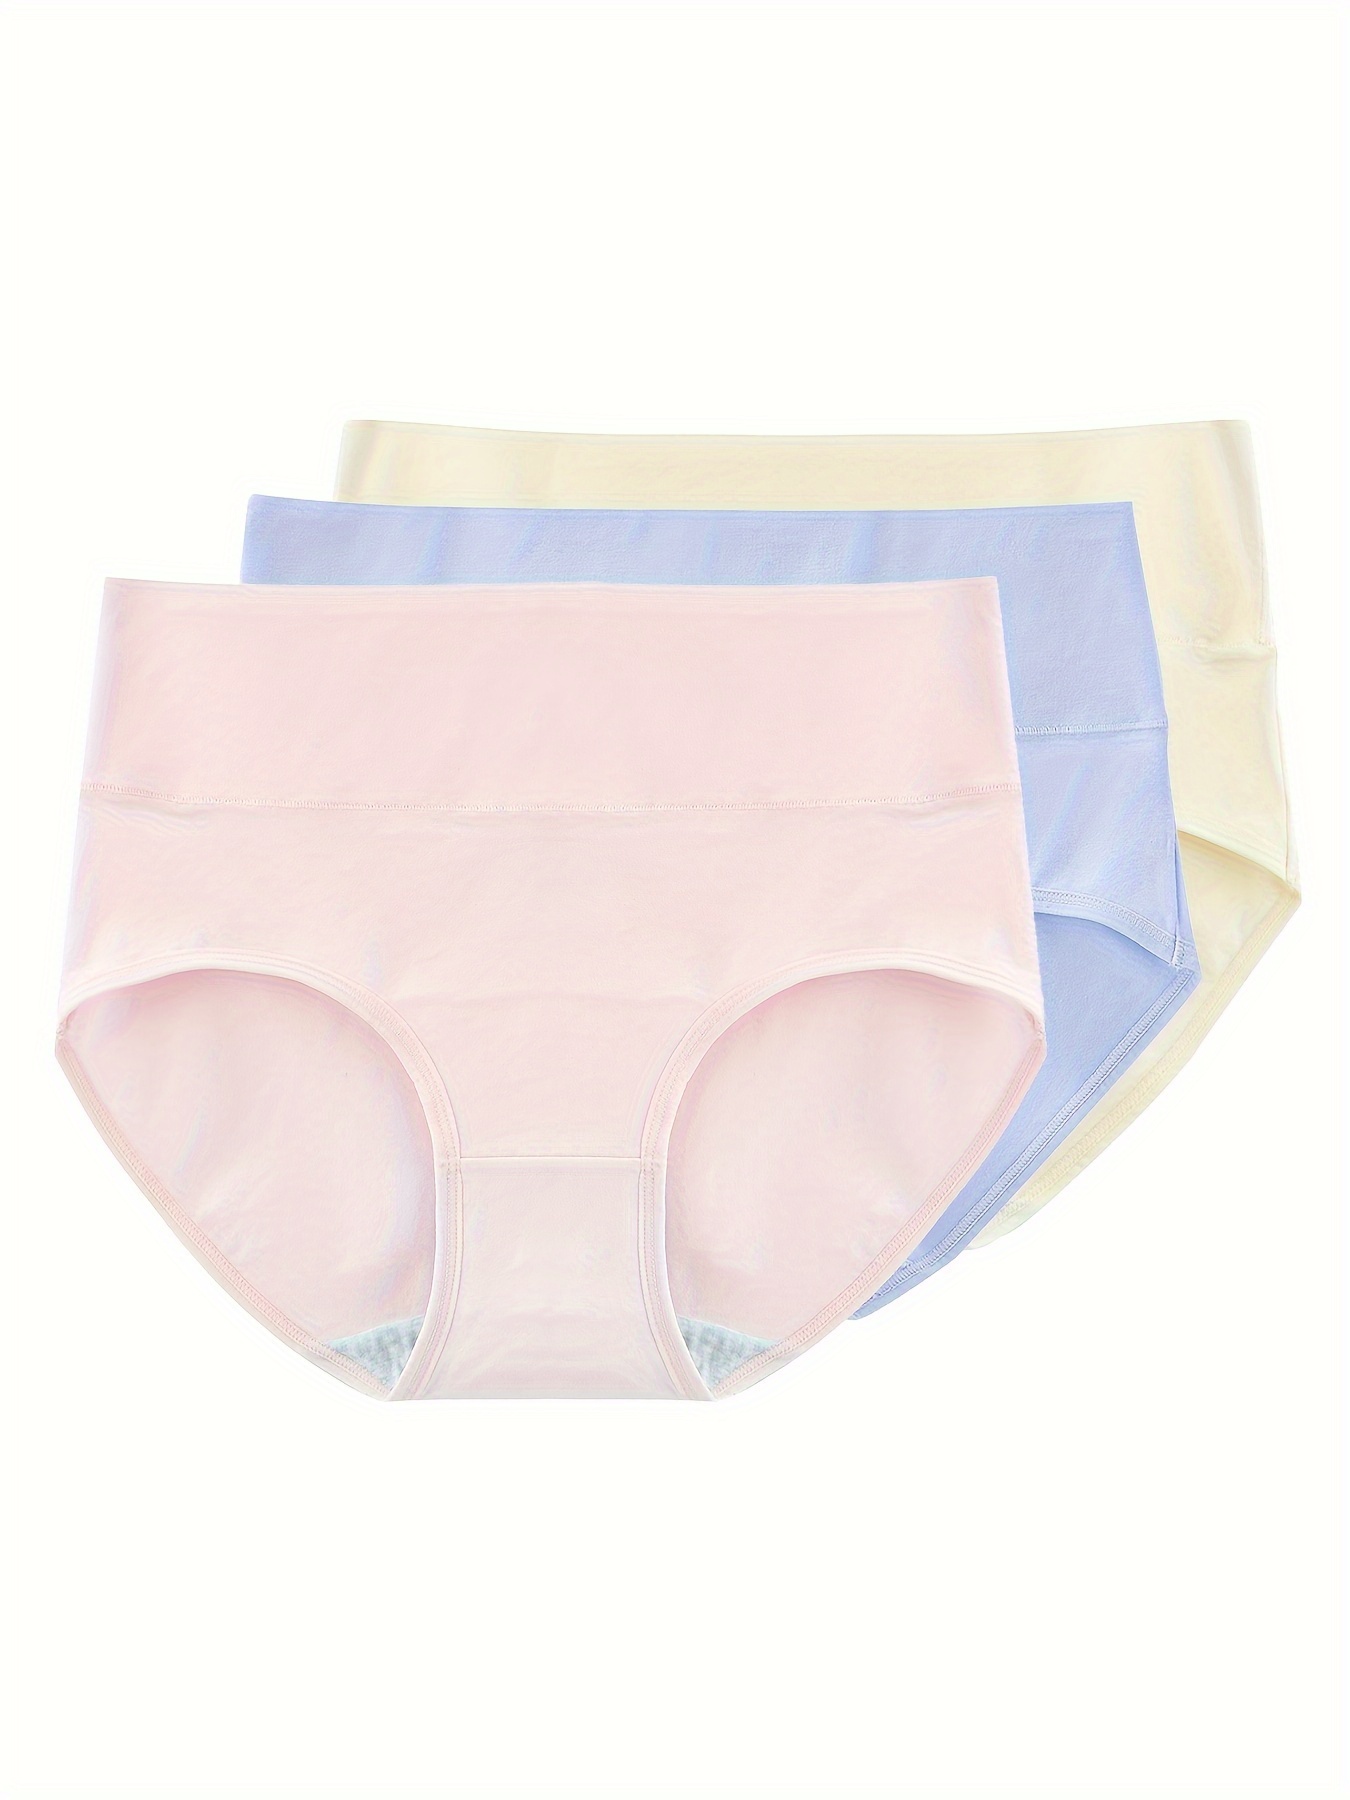 HUPOM Seamless Tummy Control Underwear For Women Girls Panties High Waist  Sleepwear Belt Elastic Waist Blue M